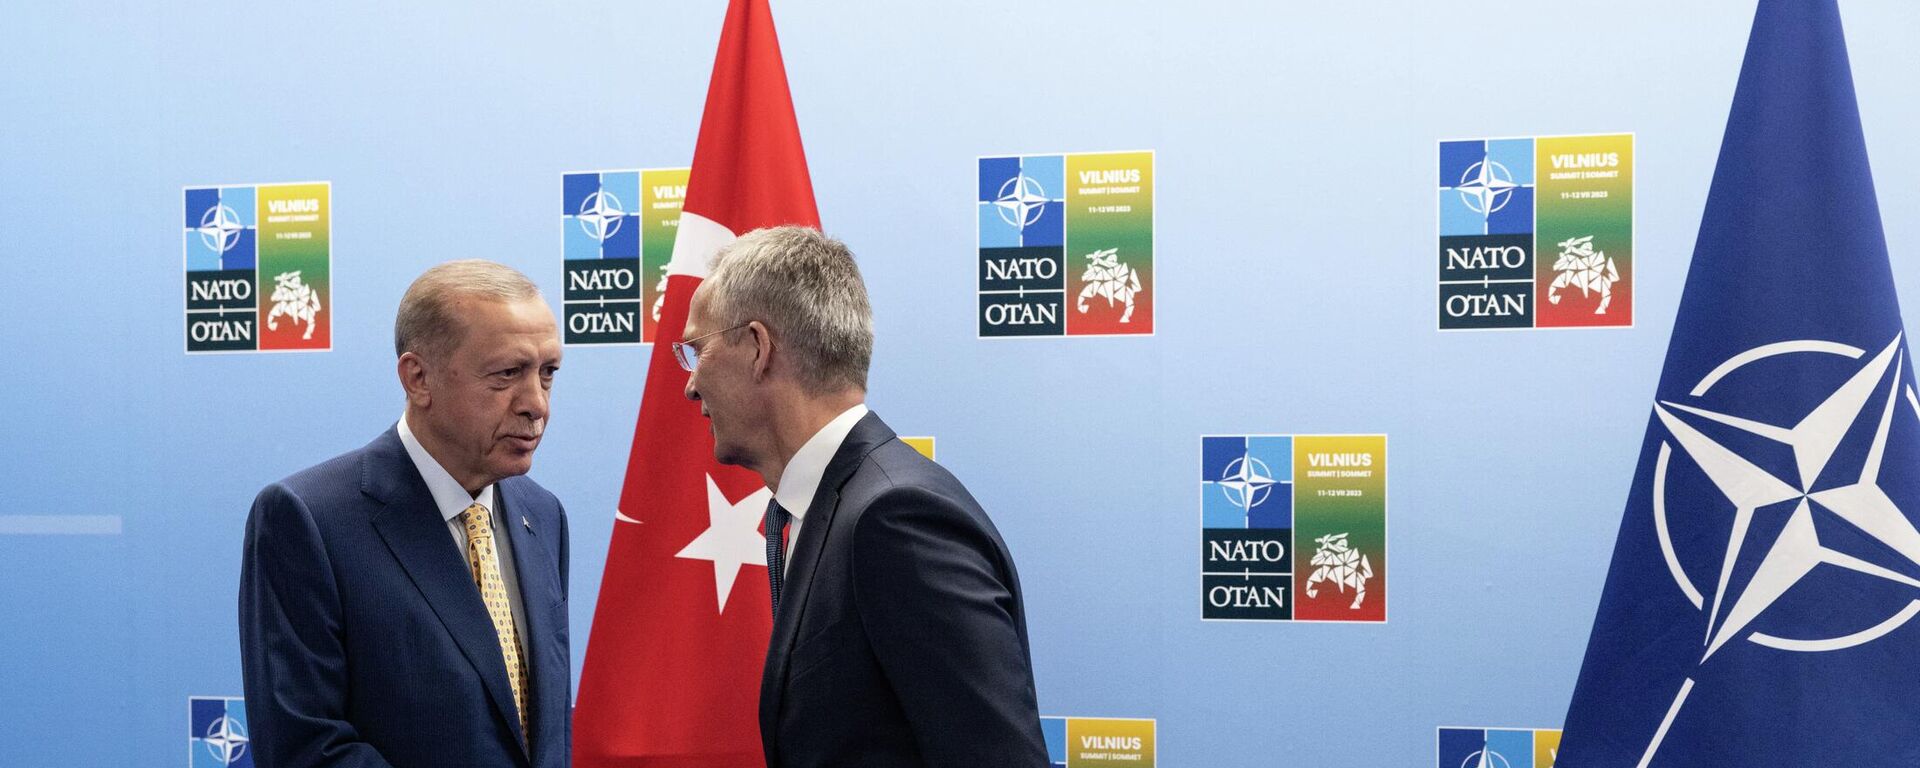 Генеральный секретарь НАТО Йенс Столтенберг приветствует президента Турции Реджепа Тайипа Эрдогана во время прибытия на саммит НАТО в Вильнюсе - Sputnik Литва, 1920, 12.07.2023